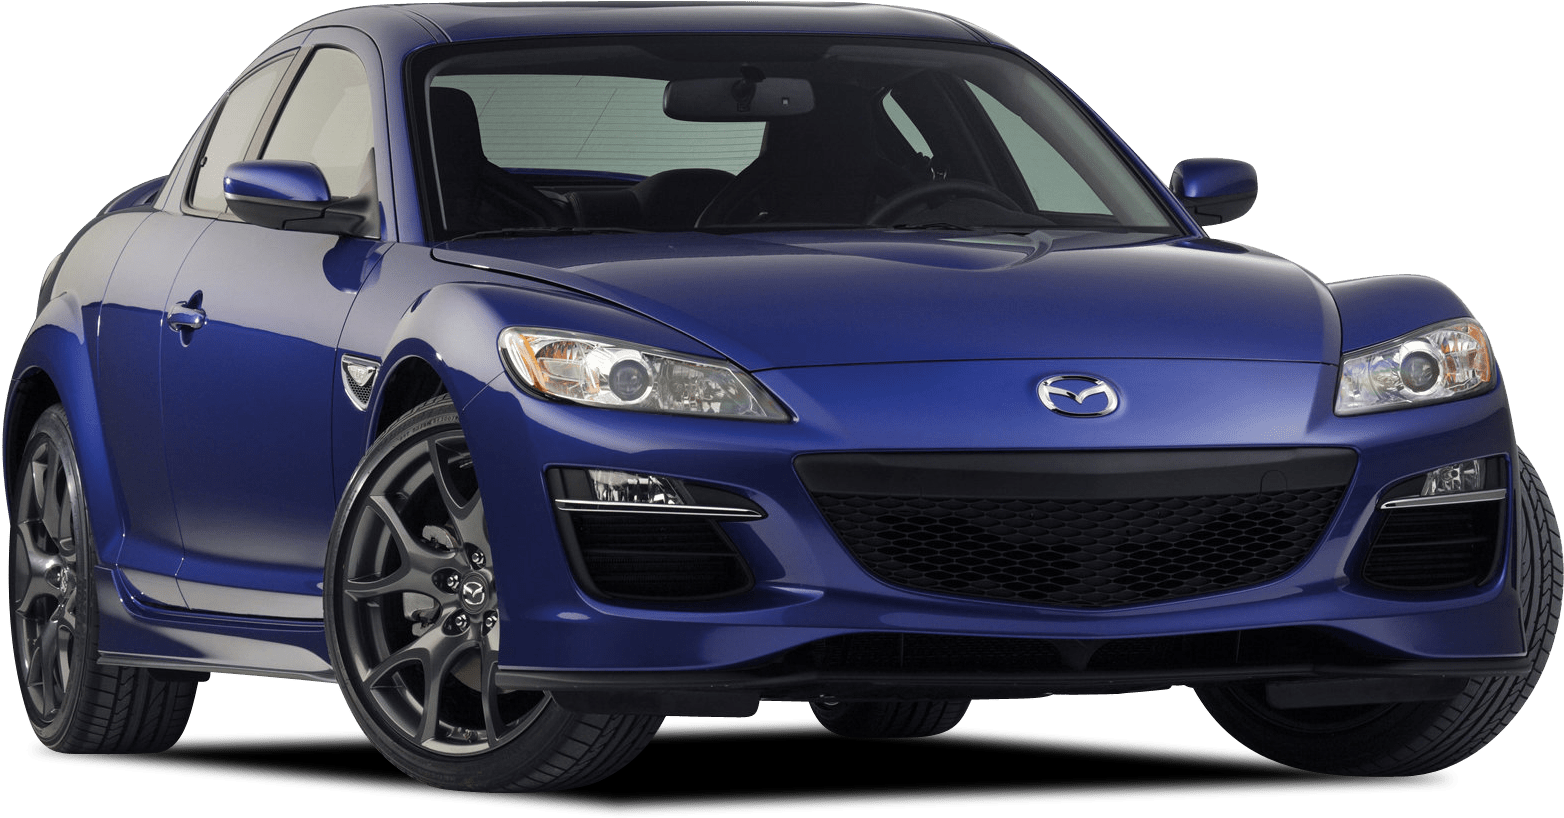 Afbeelding van J748RL, blauwe Mazda Rx-8 sedan